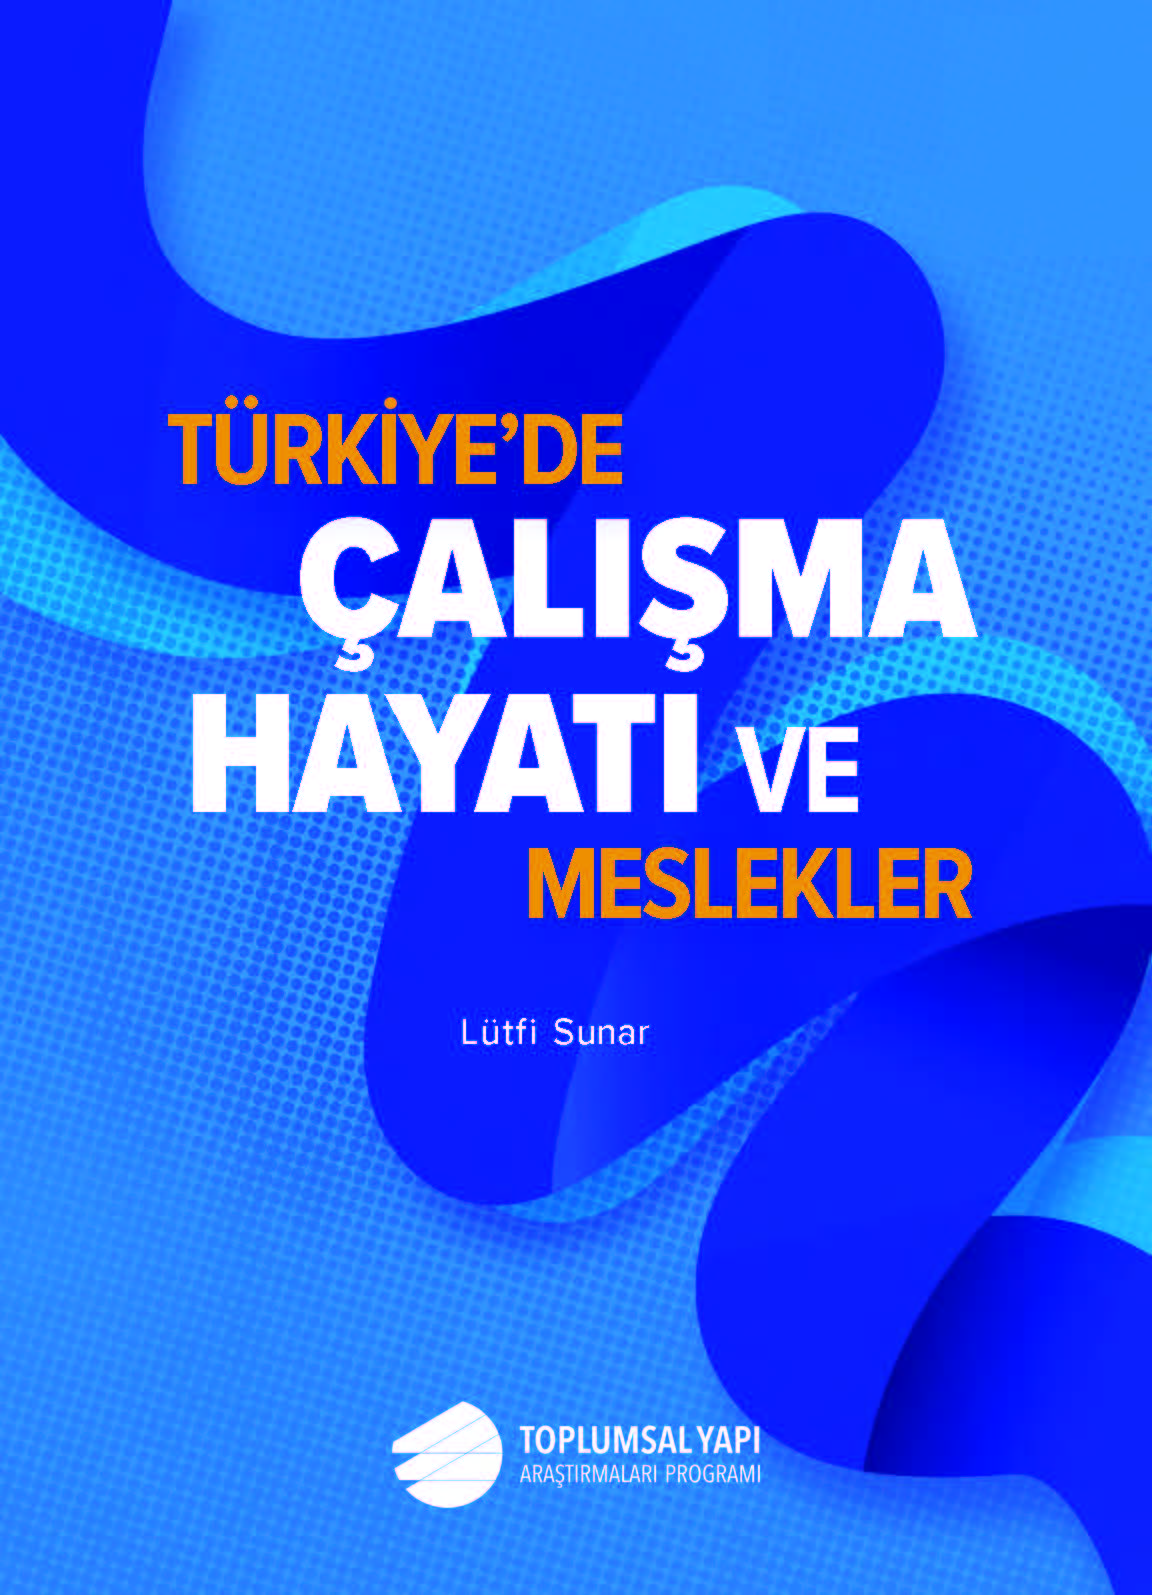 Türkiye’de Çalışma Yaşamı ve Meslekler Araştırması Yayımlandı